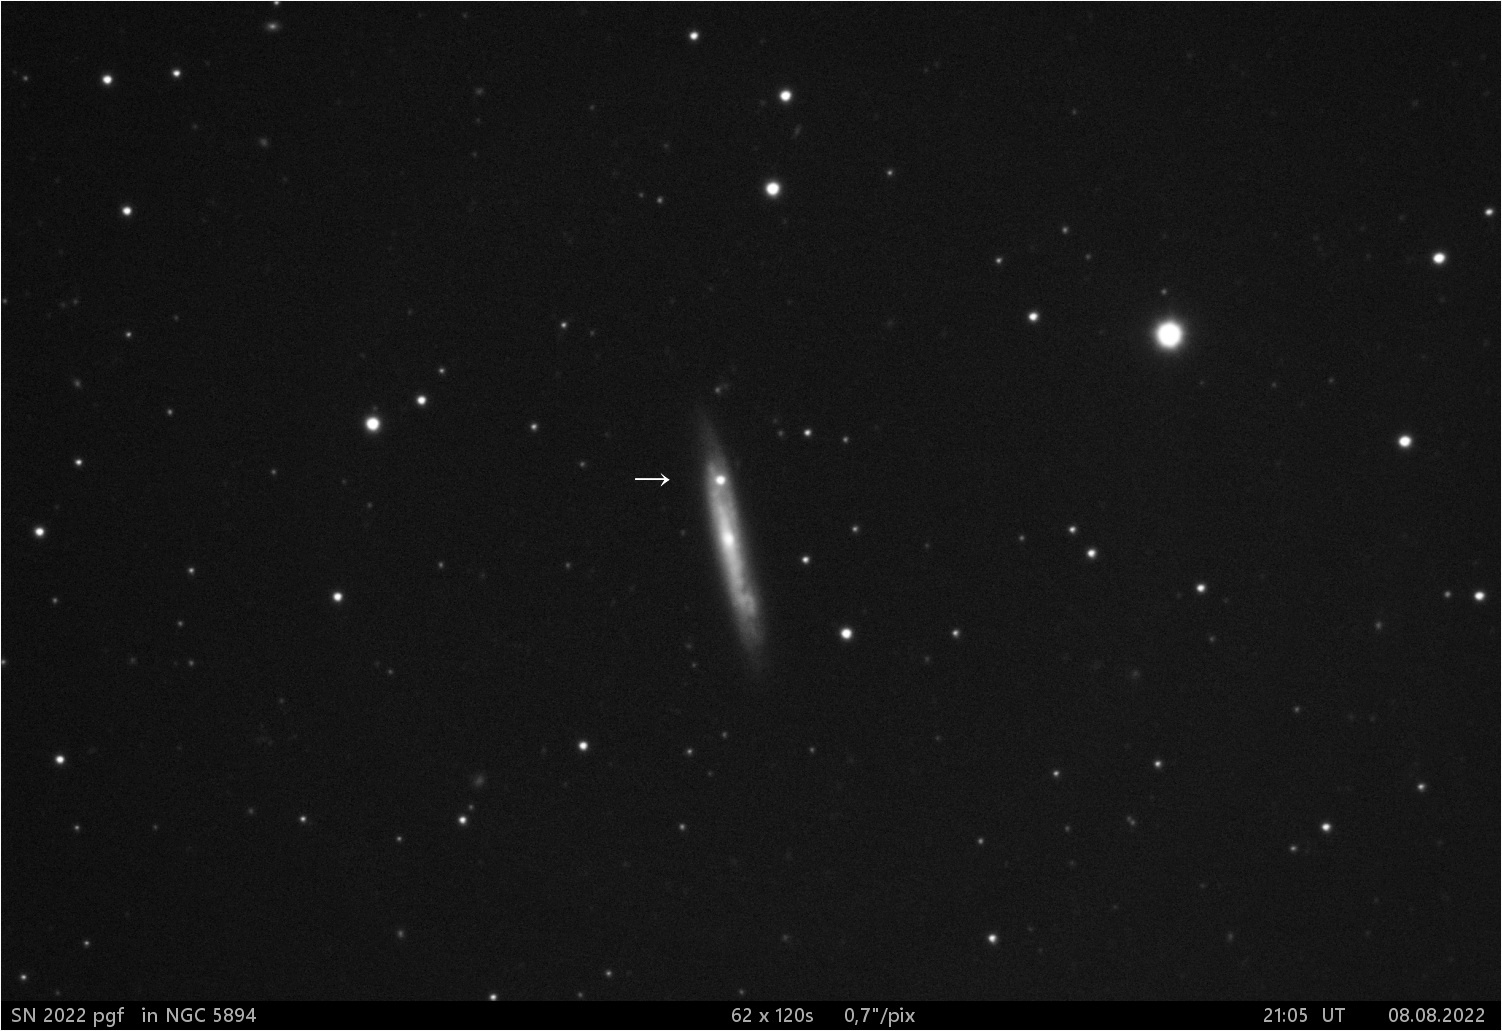 SN 2022 pgf v NGC 5894